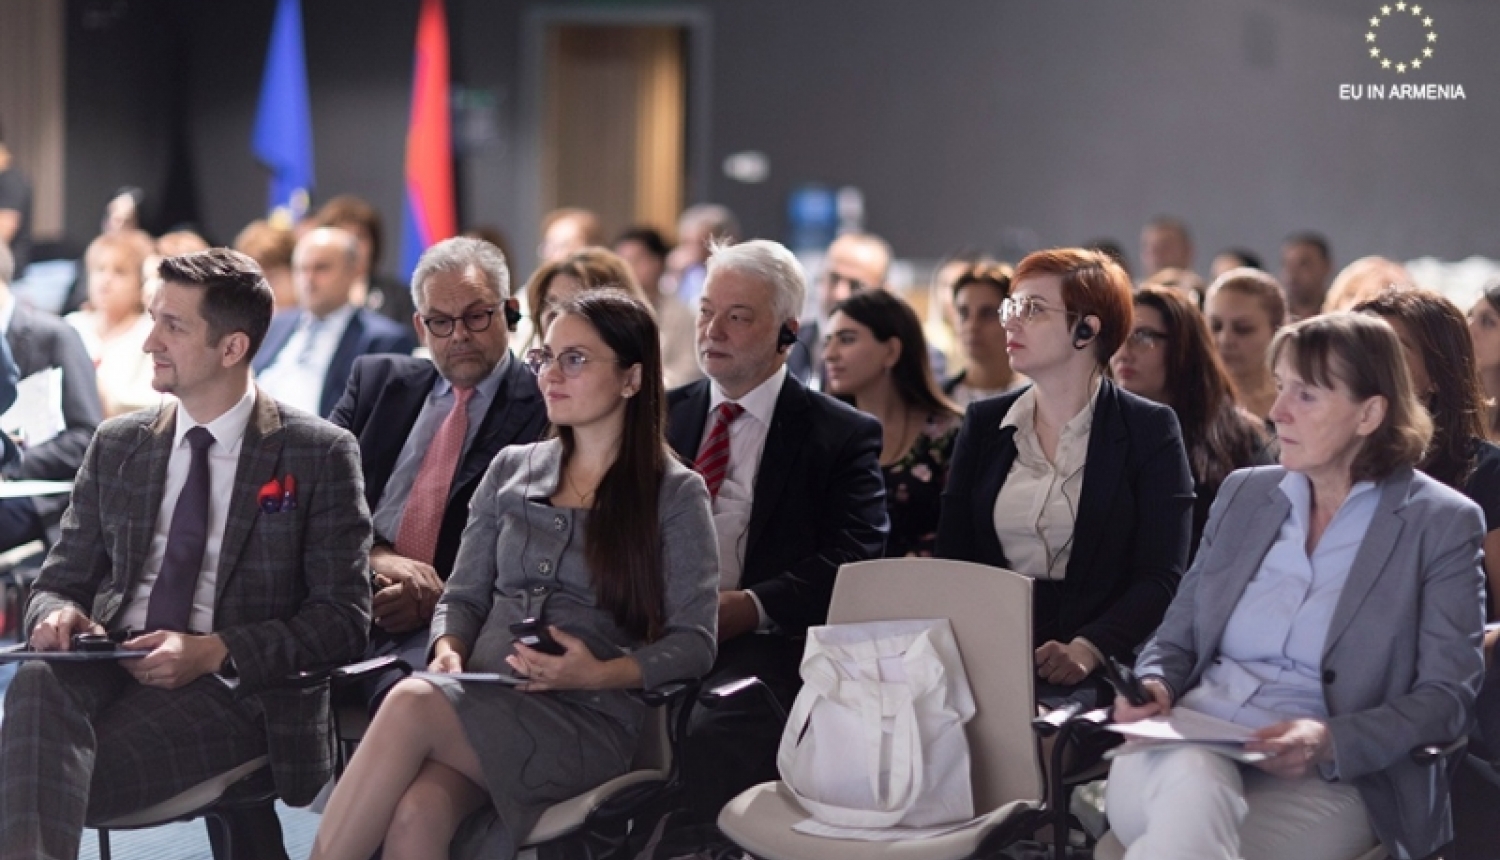 Attēlā redzamas personas, kuras piedalījās Twinning (mērķsadarbības) projekta "Godprātīguma veicināšana un korupcijas novēršana Armēnijas publiskajā sektorā" atklāšanas pasākumā